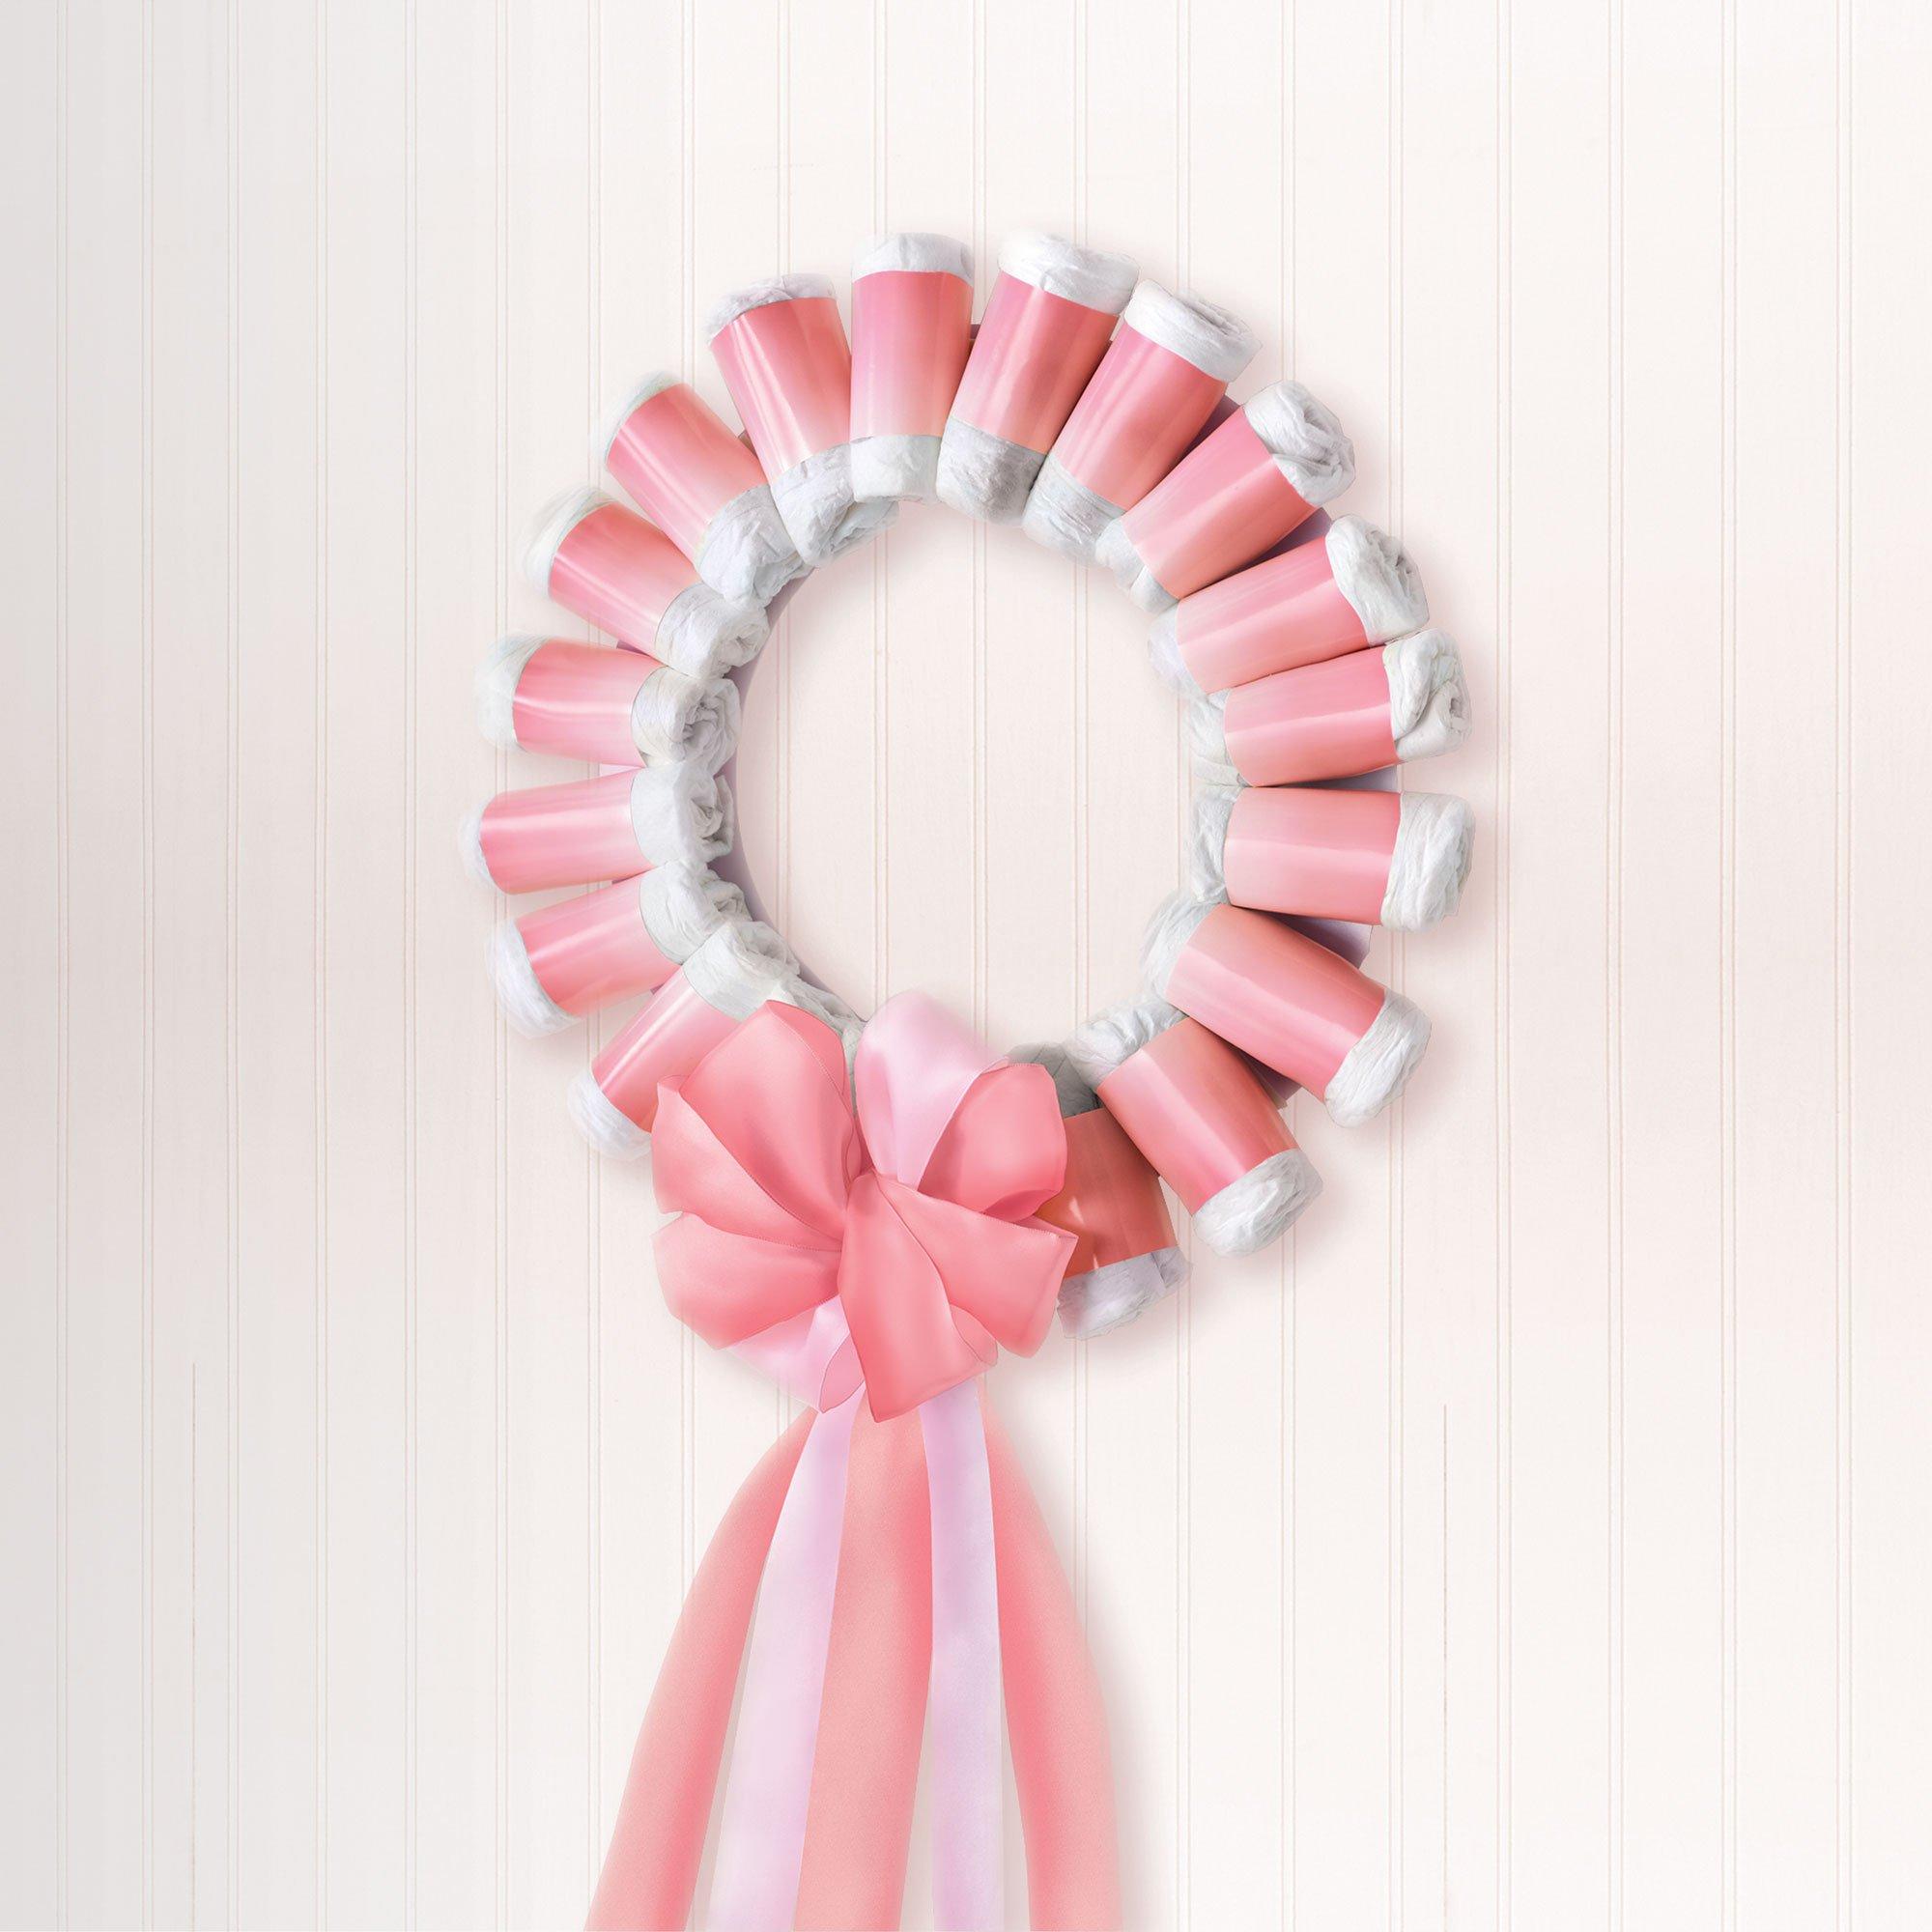 Pink Princess Birthday Ribbons, 6.5 in.